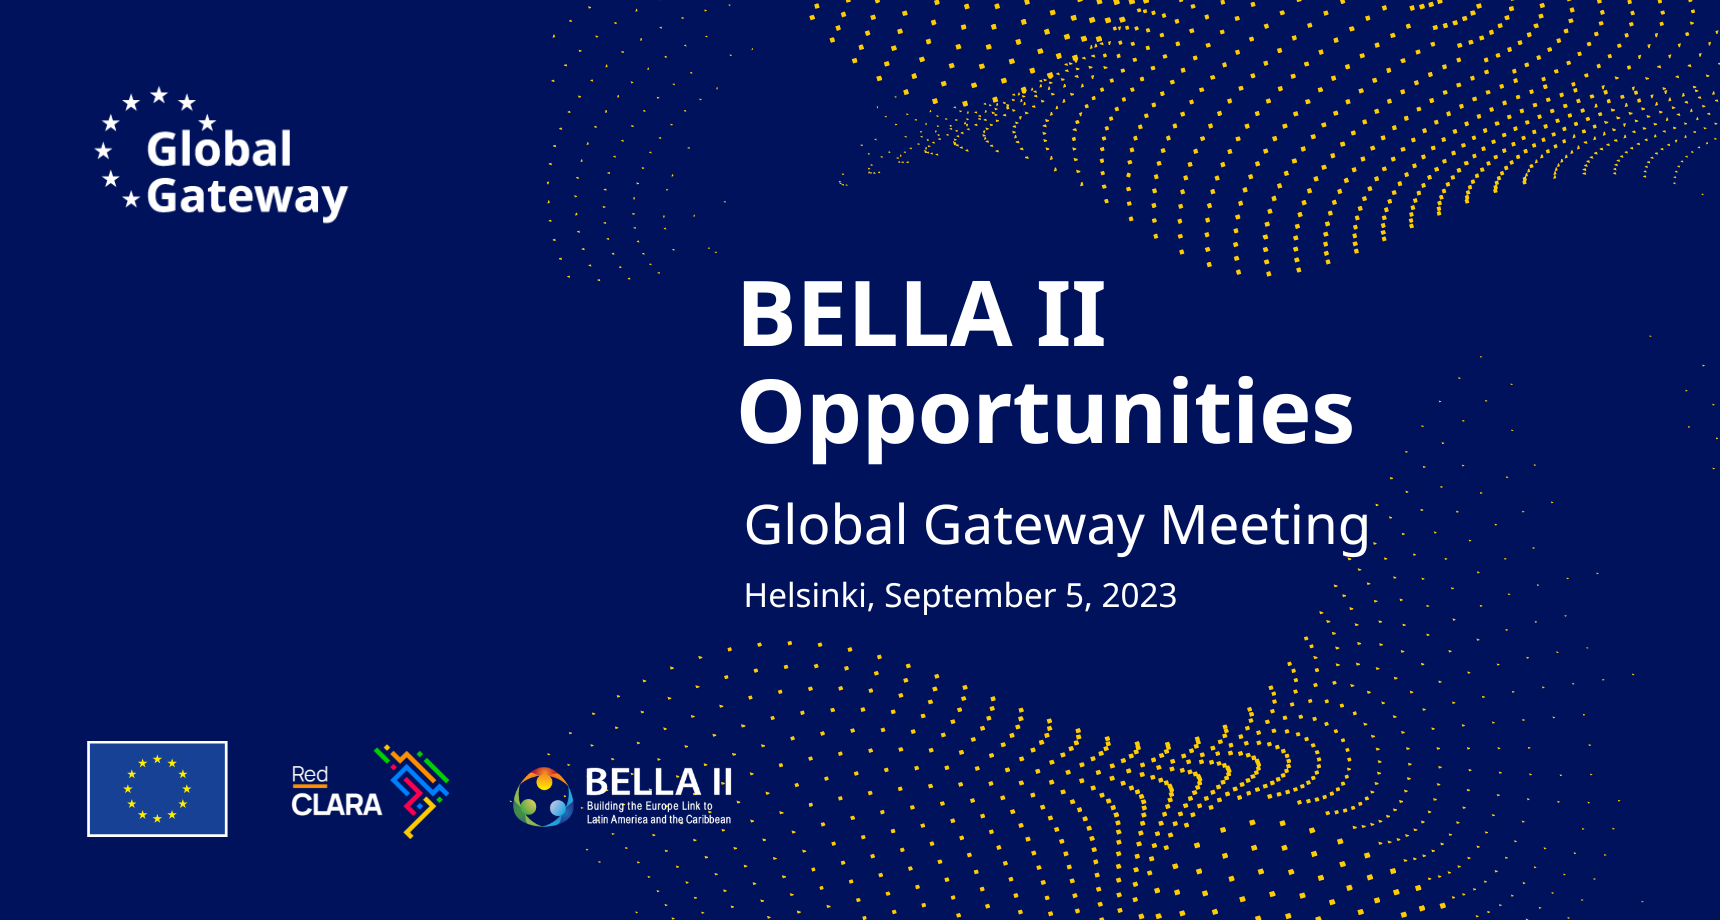 A RedCLARA e a BELLA II apresentarão um portfólio de projetos de conectividade na reunião do Global Gateway na Finlândia.